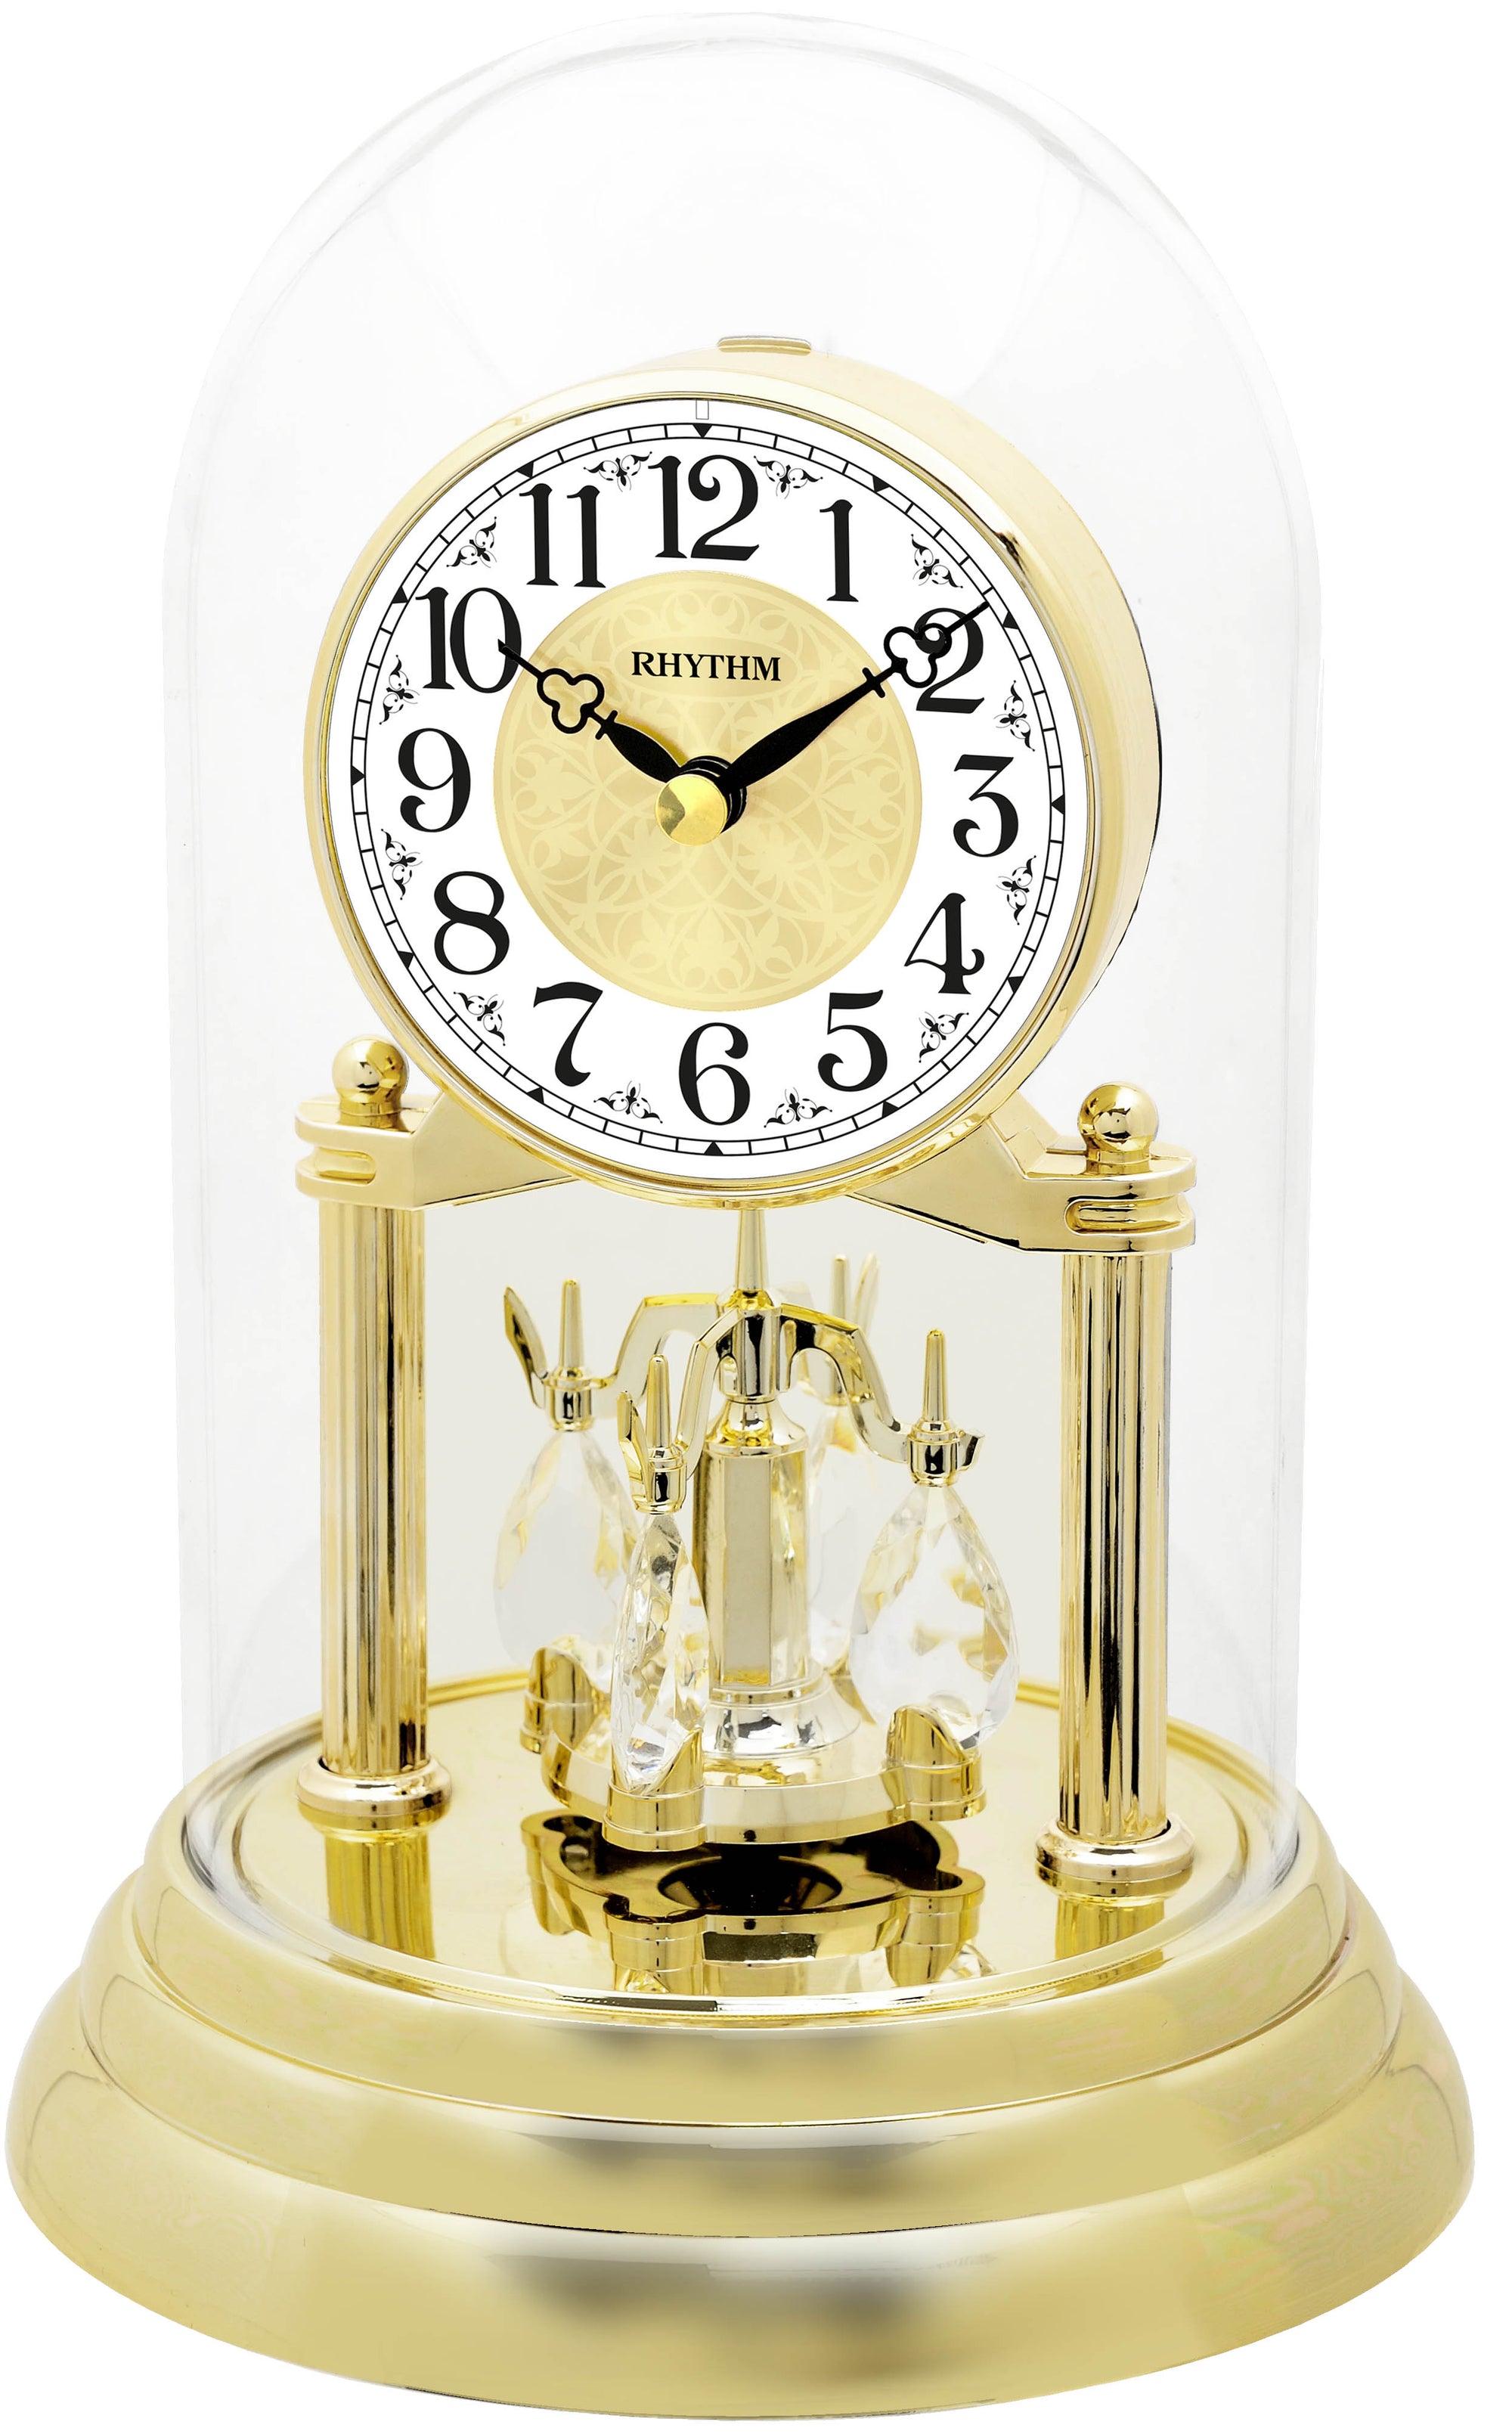 Rhythm anniversary clock gold CRG120NR18